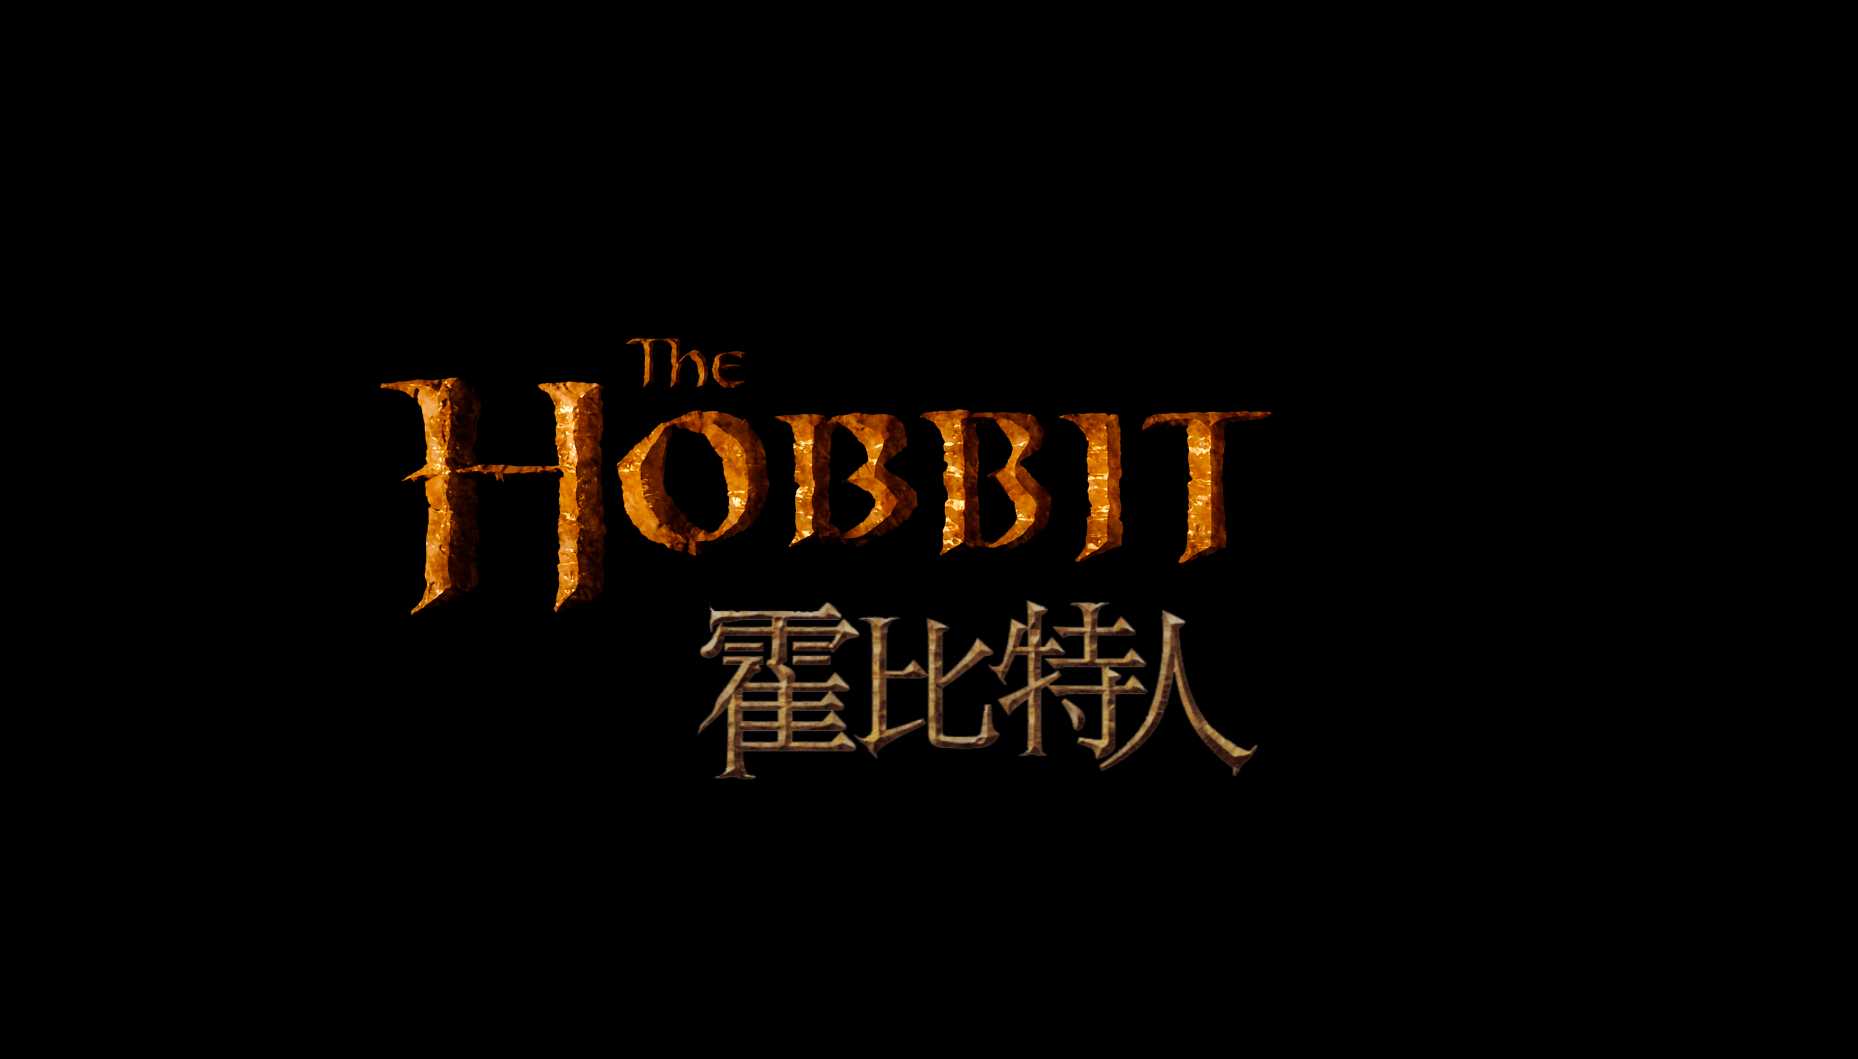 【霍比特人系列】霍比特人1-3合集 4K REMUX 【HDR】【SUP全特效外挂双语字幕】【220G】